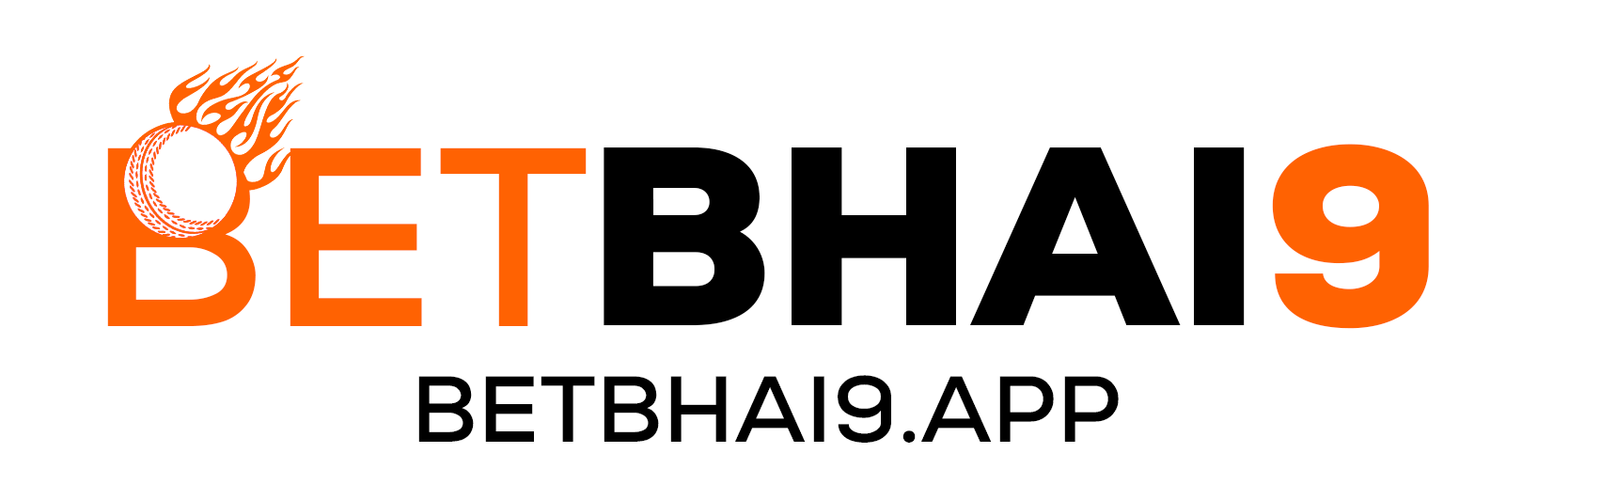 bet bhai9 logo